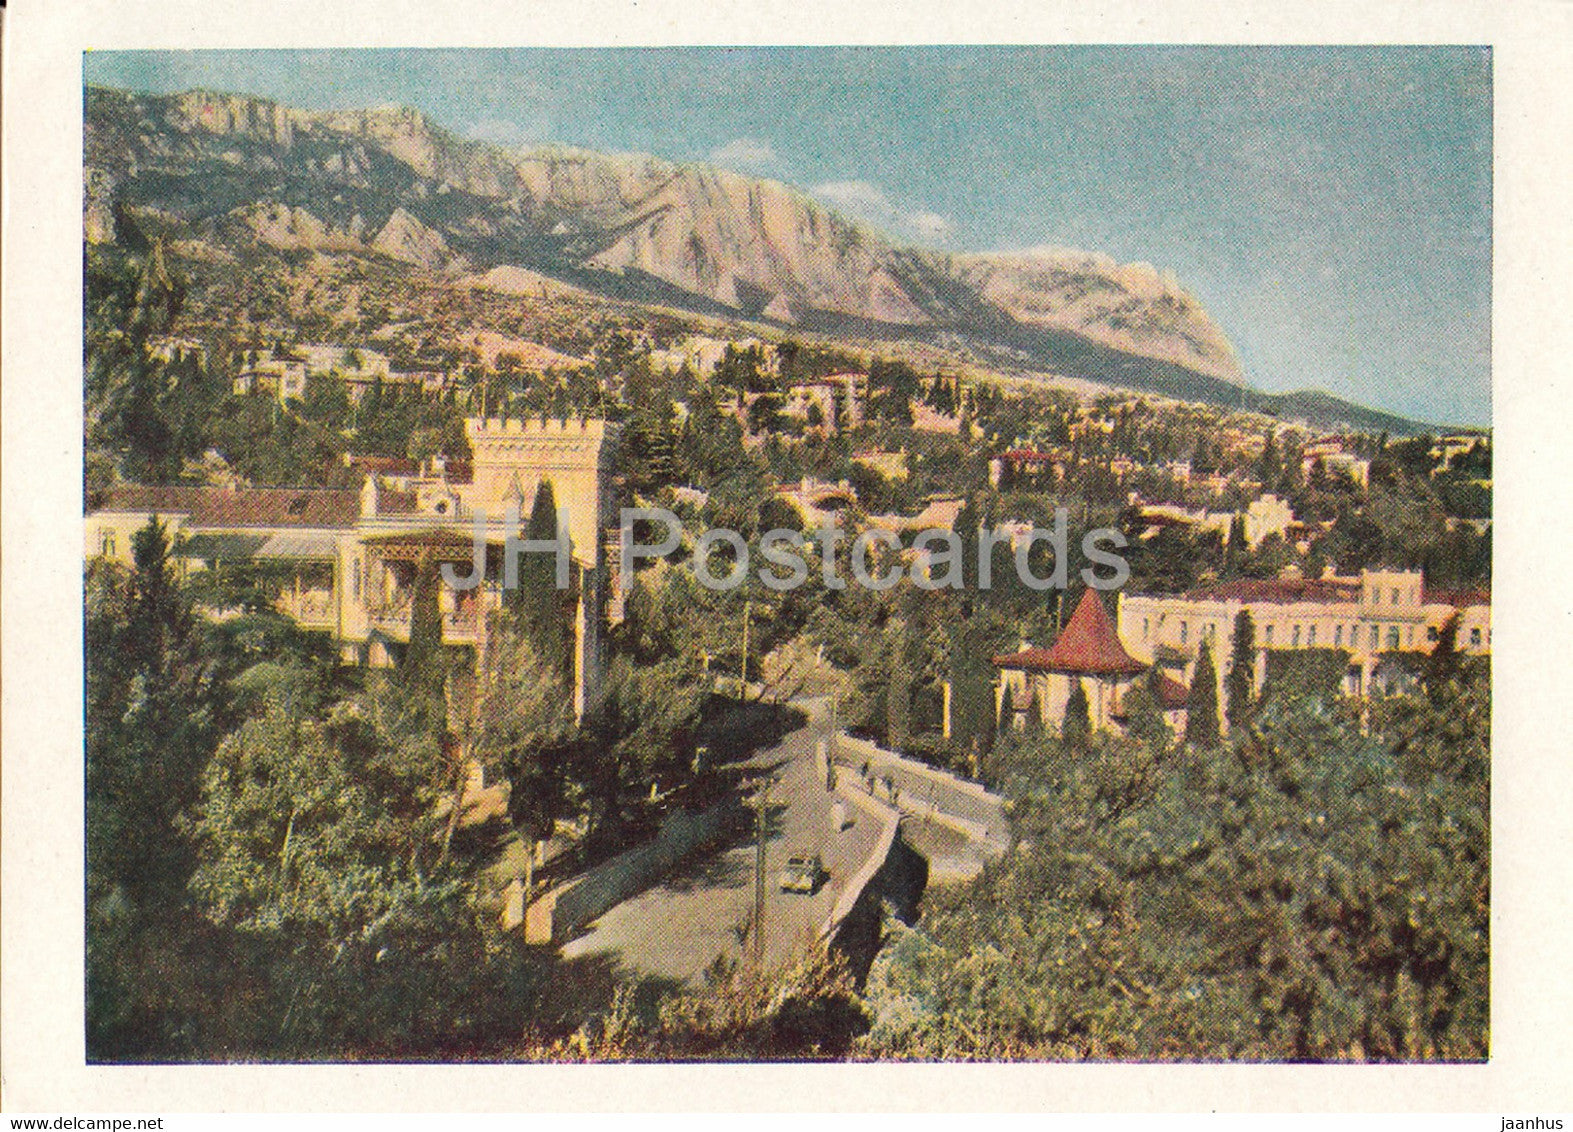 Simeiz - Crimea - postal stationery - old postcard - 1957 - Ukraine USSR - unused - JH Postcards